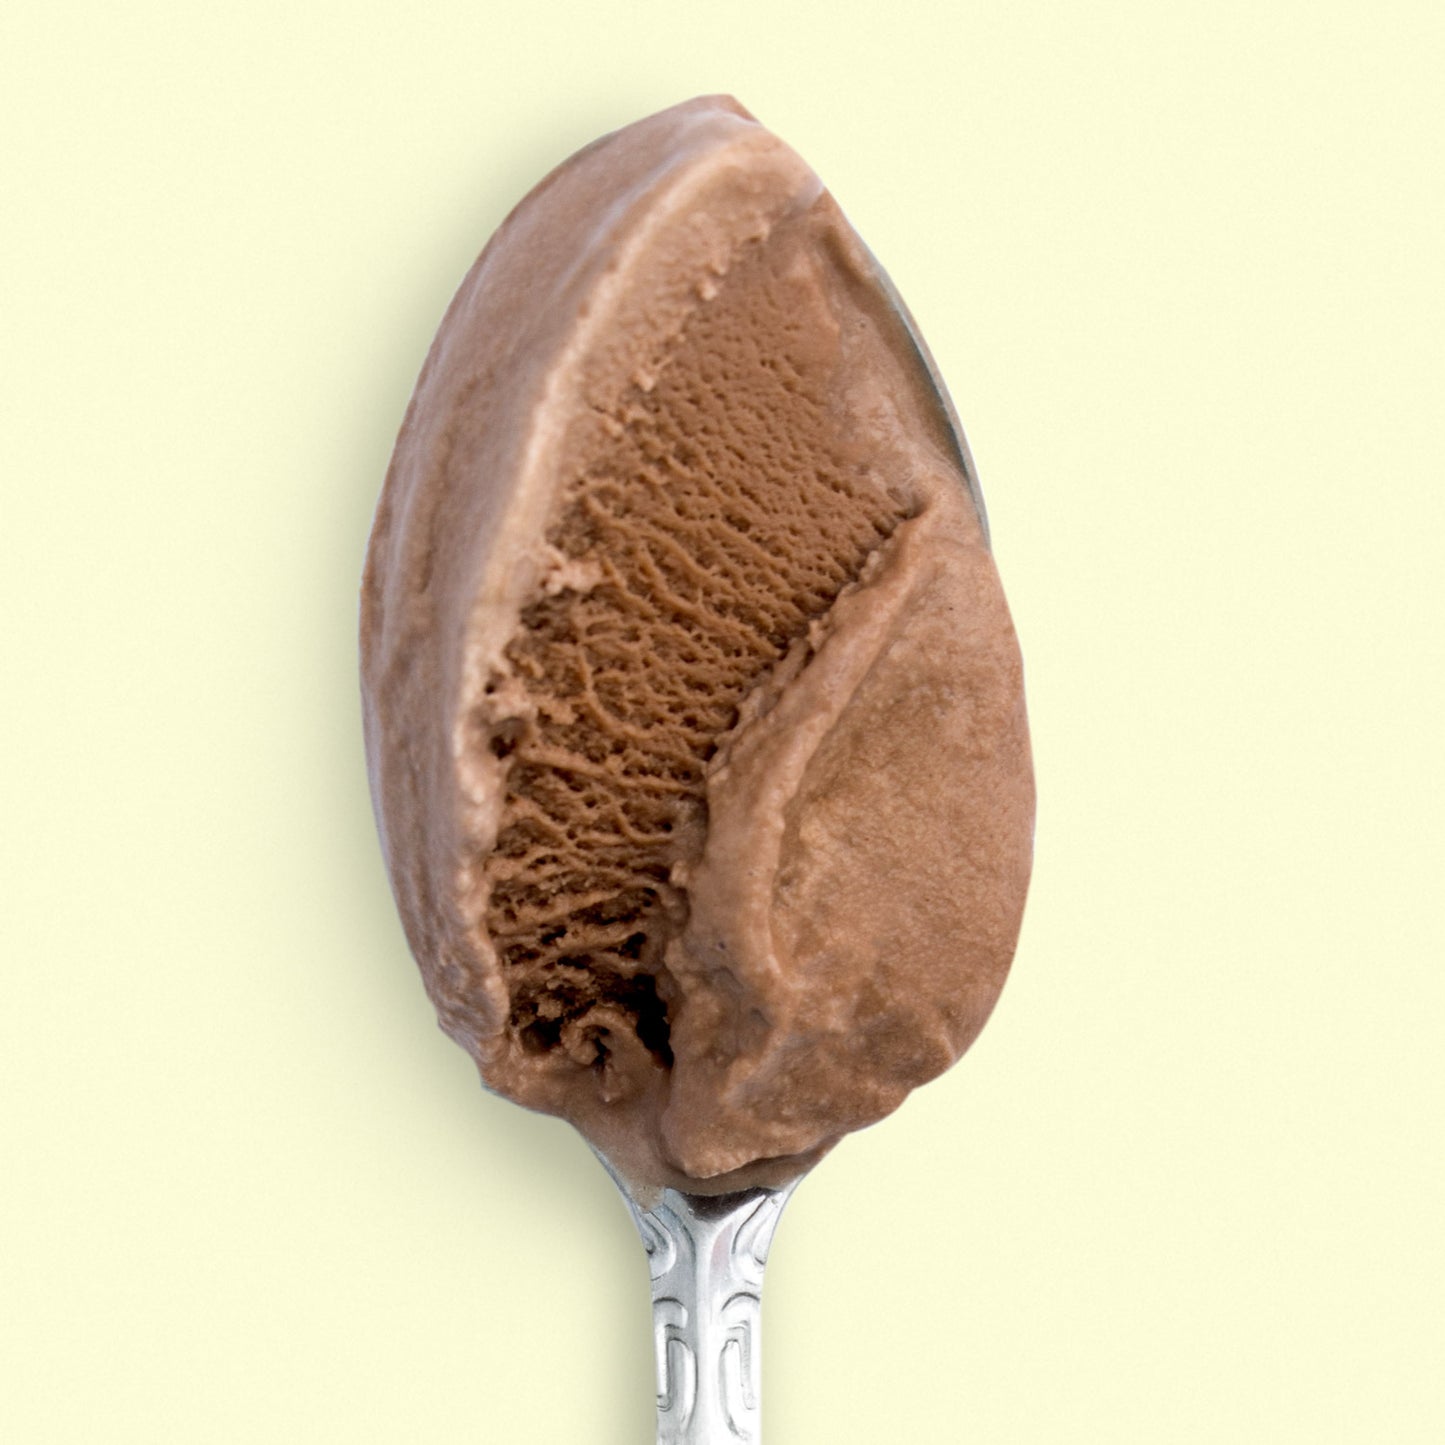 Milkiest Chocolate Pint Jeni's Splendid Ice Creams   